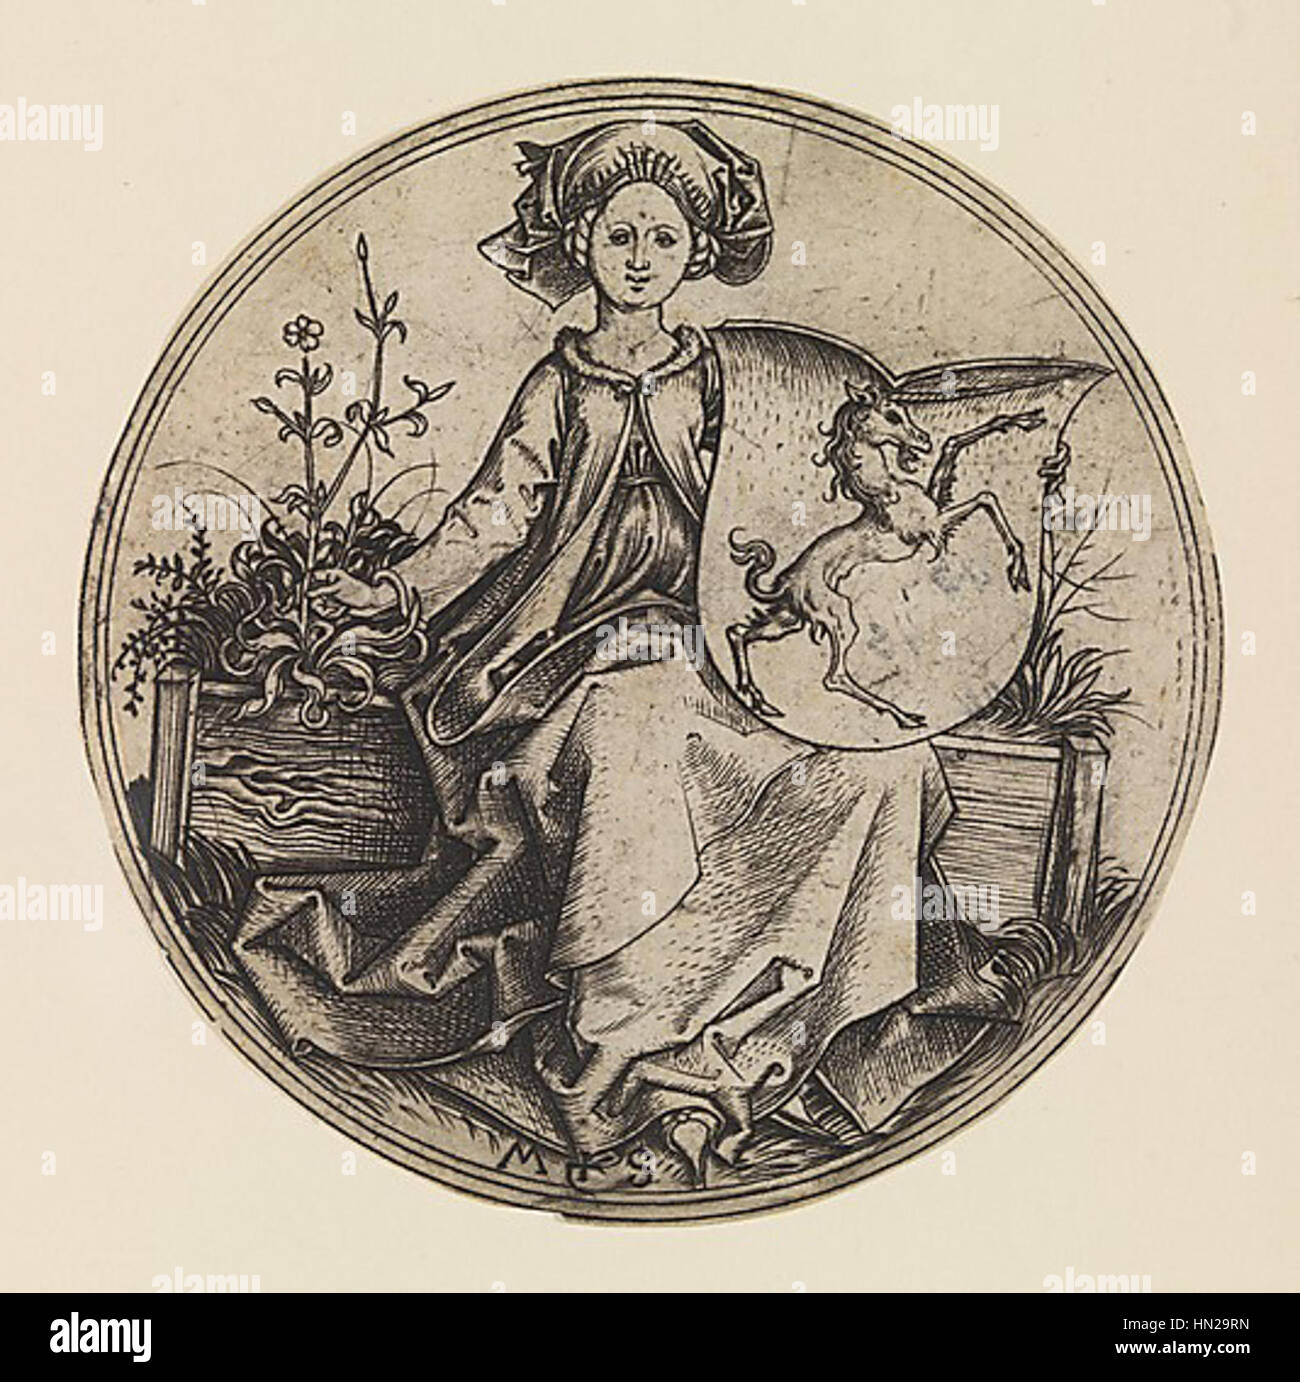 Martin Schongauer - Wappenschild mit Einhorn, von einer jungen Frau gehalten (L 96) Stock Photo